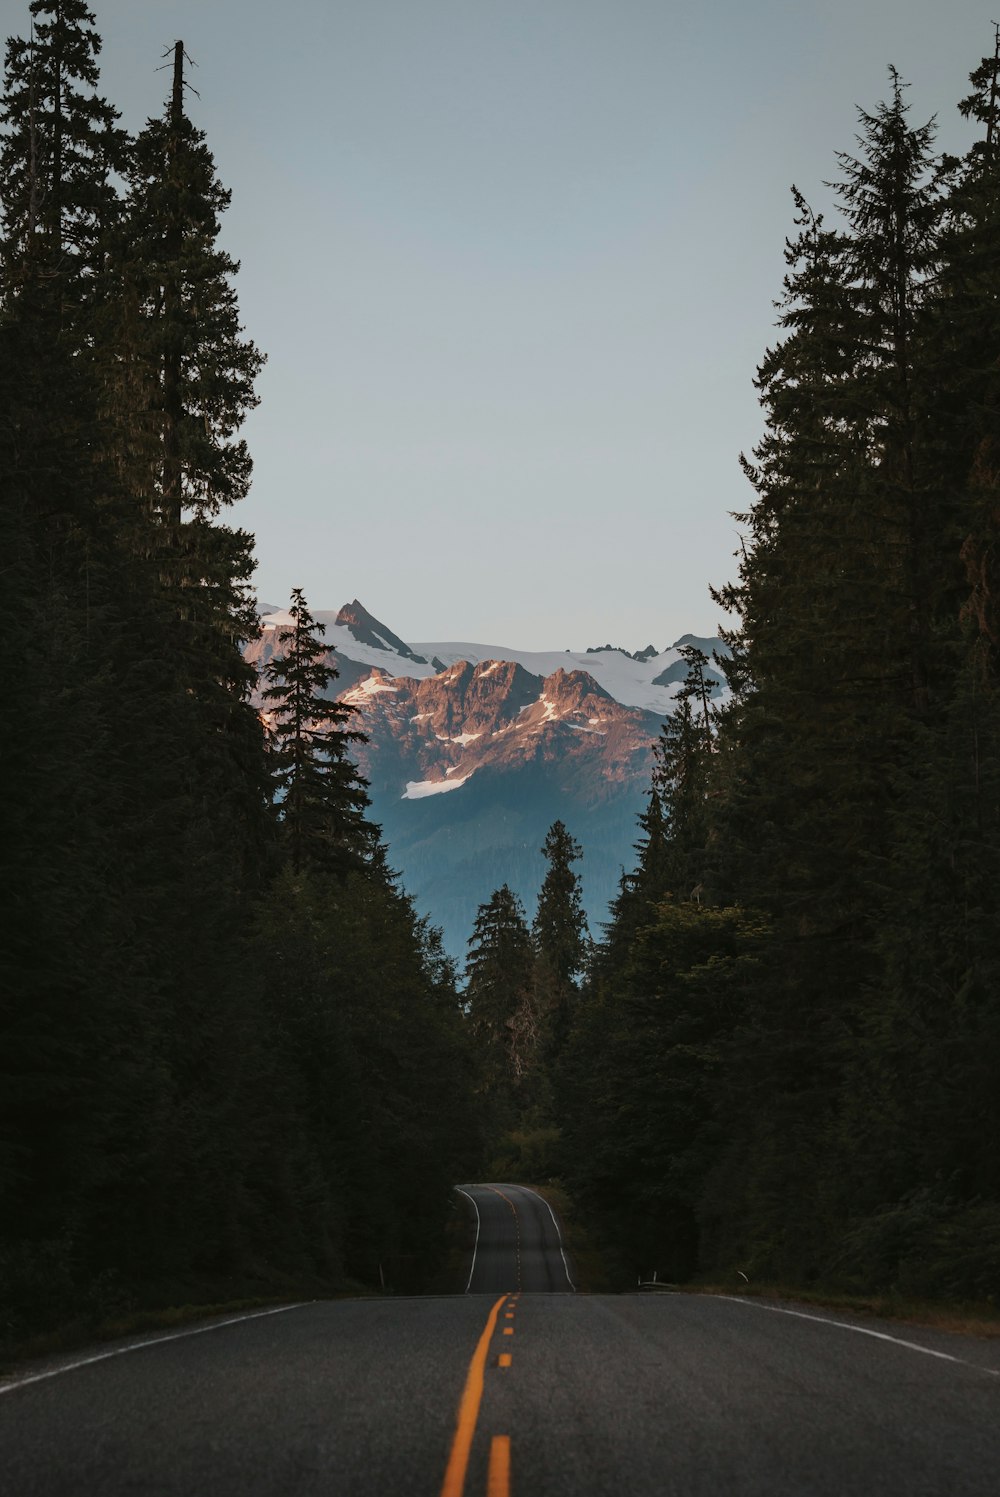 Fotografía de paisajes de montañas, árboles y carreteras